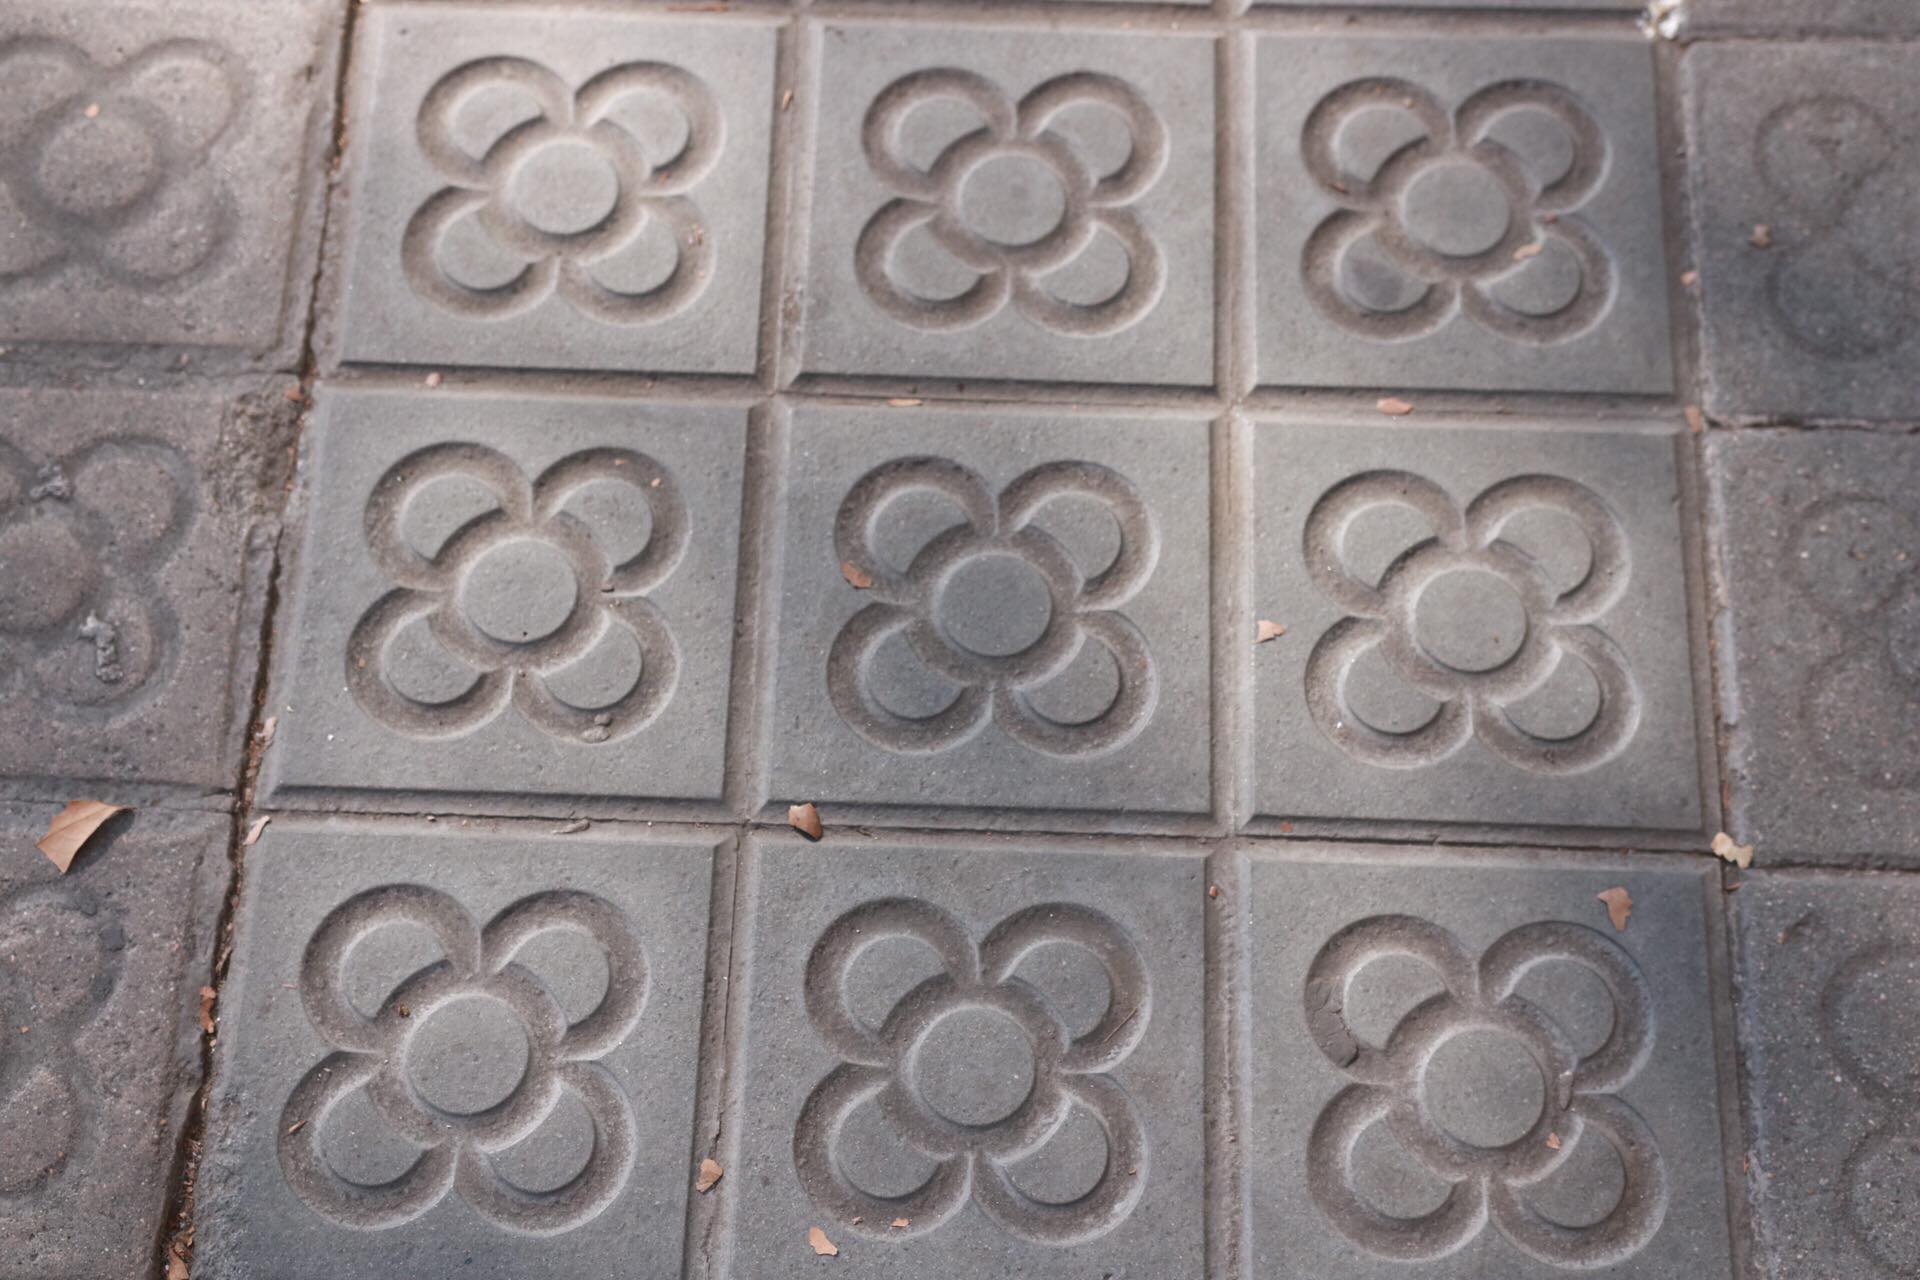 Sidewalk Tiles - The Barcelona Flower